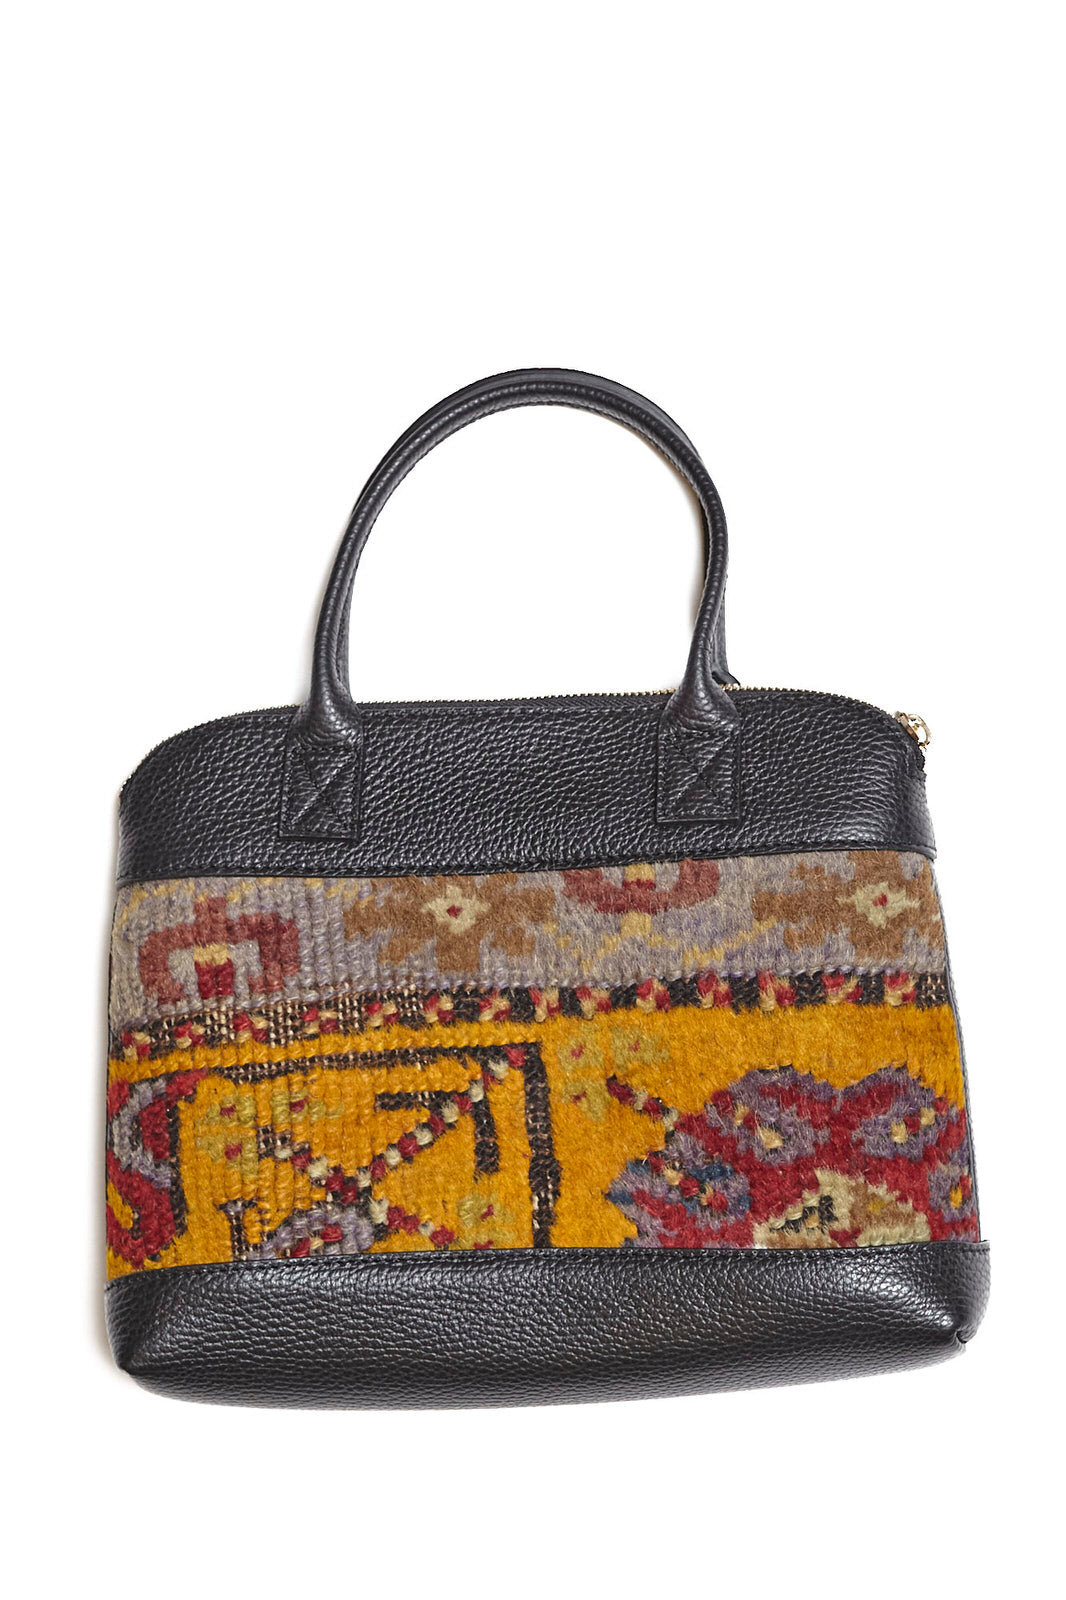 King Kennedy Isadora Handbag - 0003